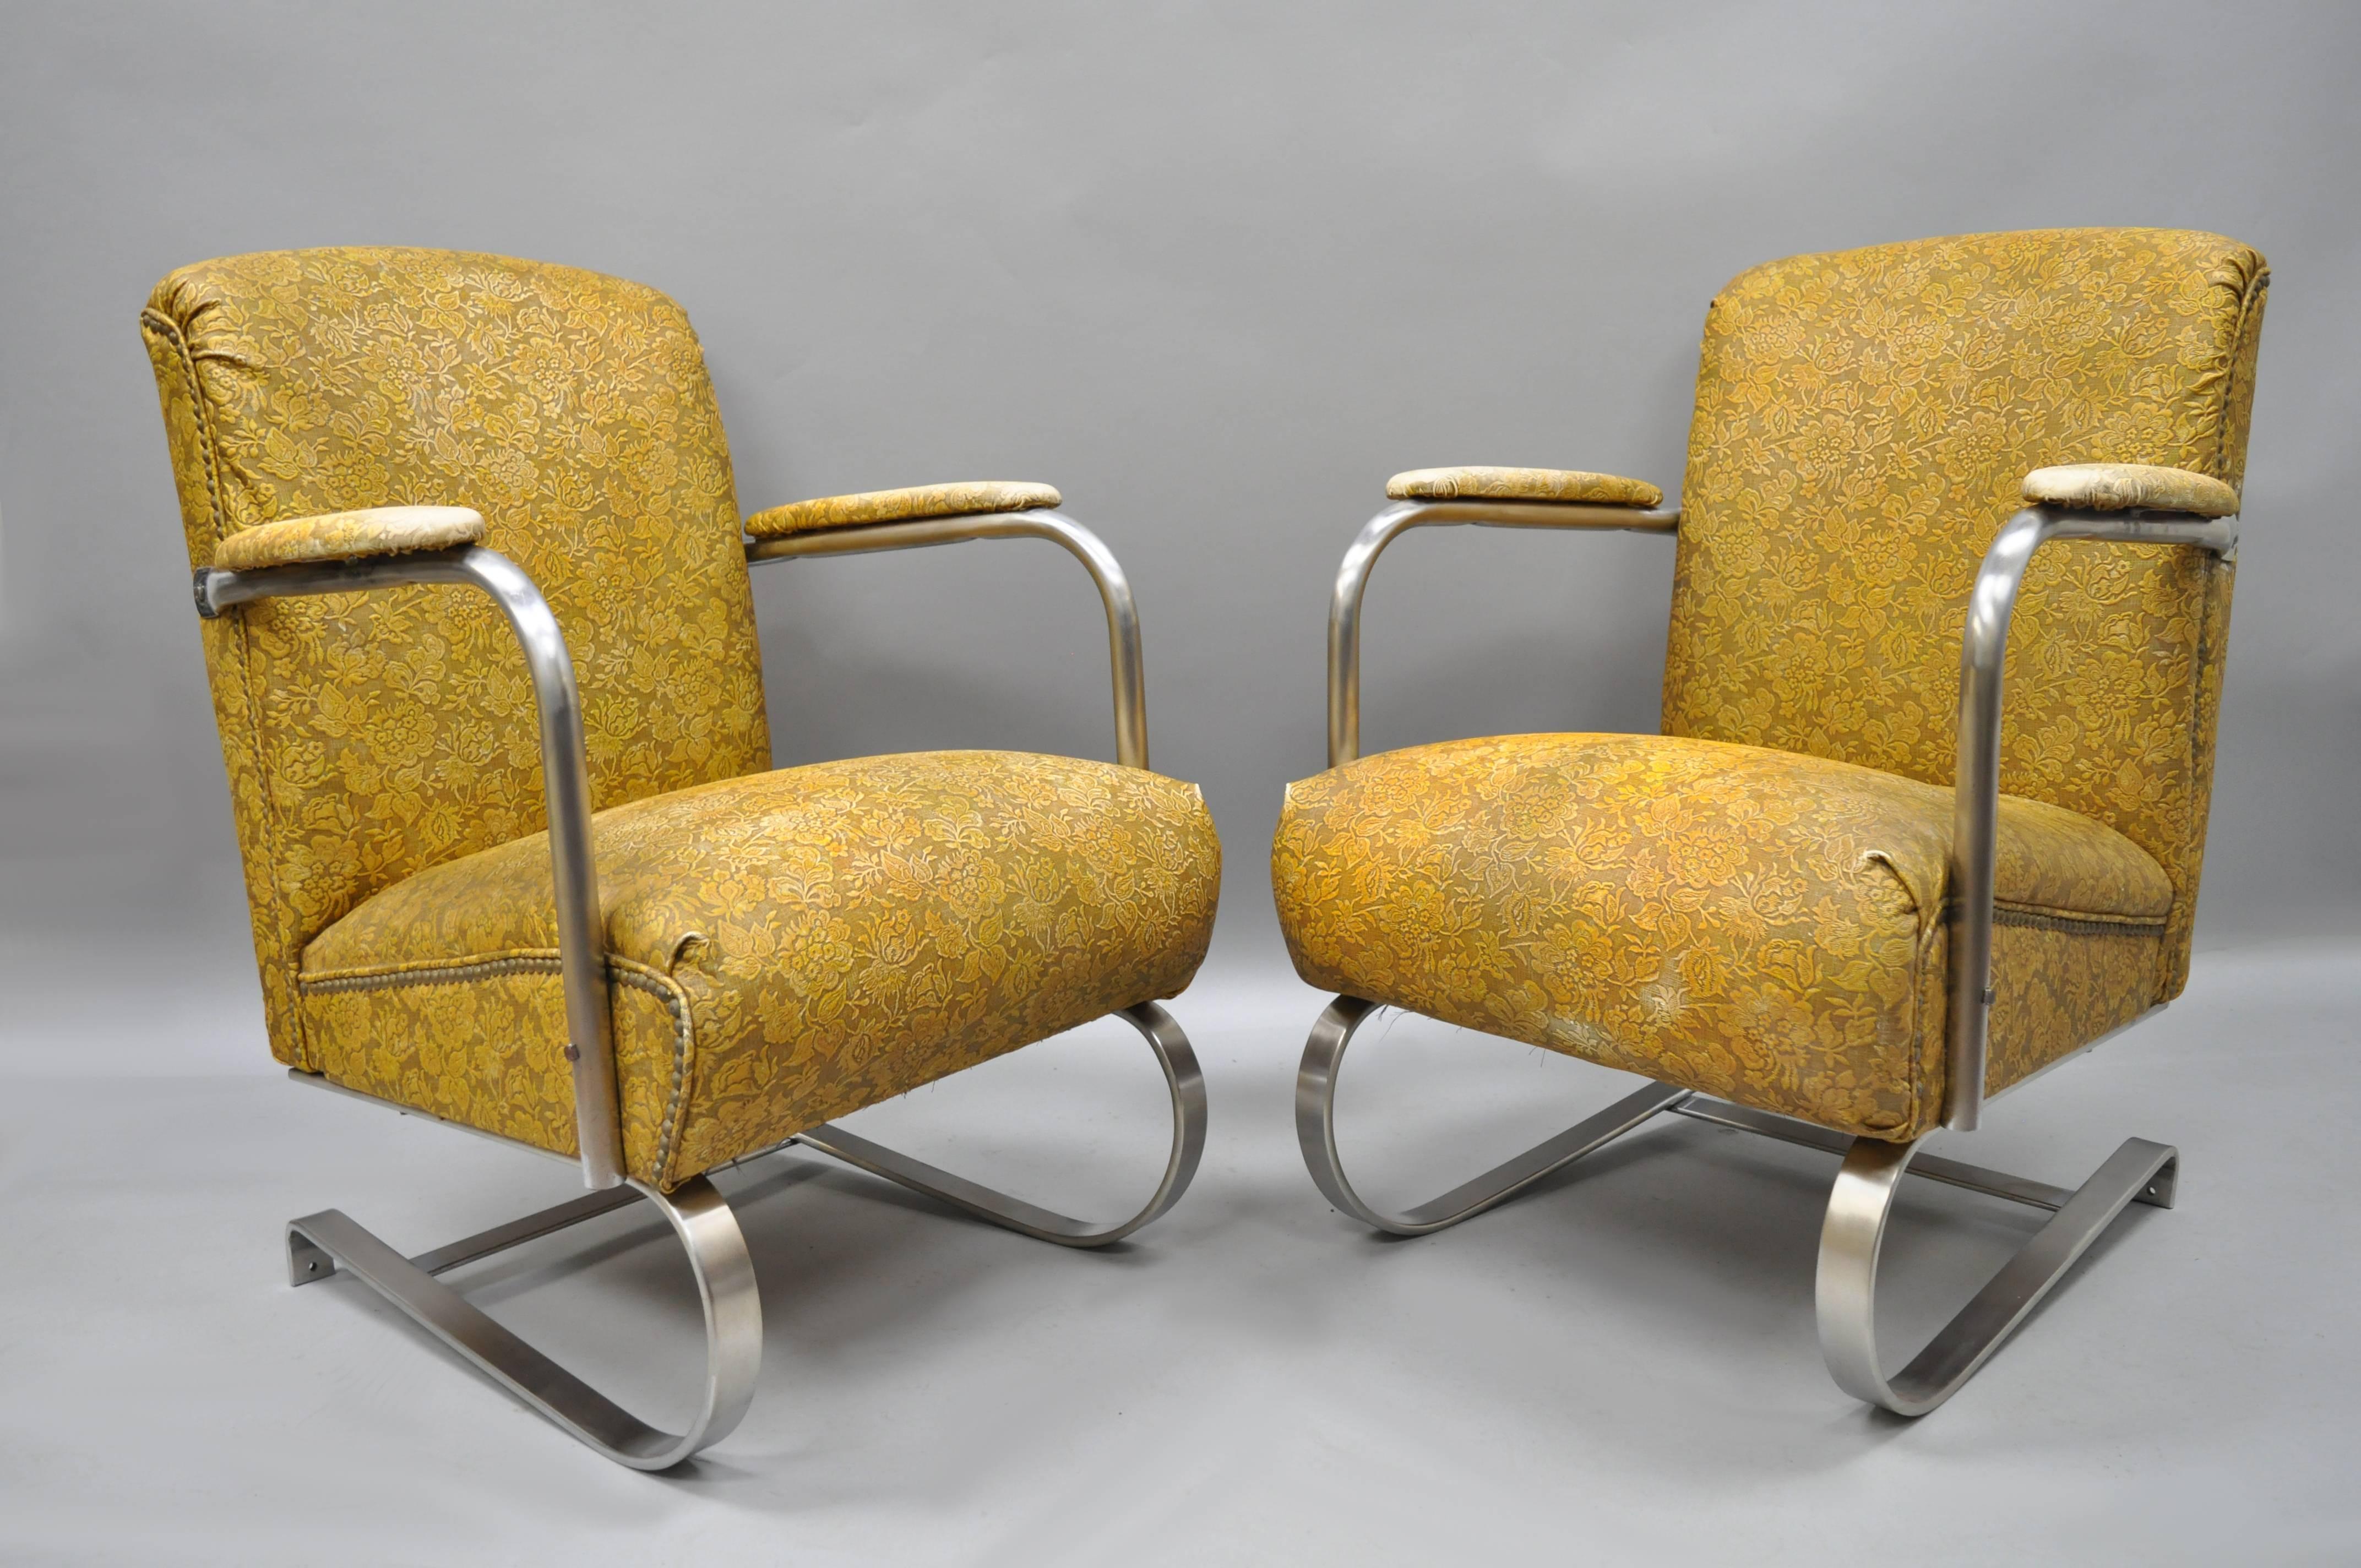 Fauteuils Art Déco / Machine Age Lloyd Springer en tubes et acier chromés avec de rares cadres rembourrés, dans le style de KEM Weber. Les chaises sont dotées d'une lourde structure métallique, d'un rembourrage complet en vinyle jaune floral